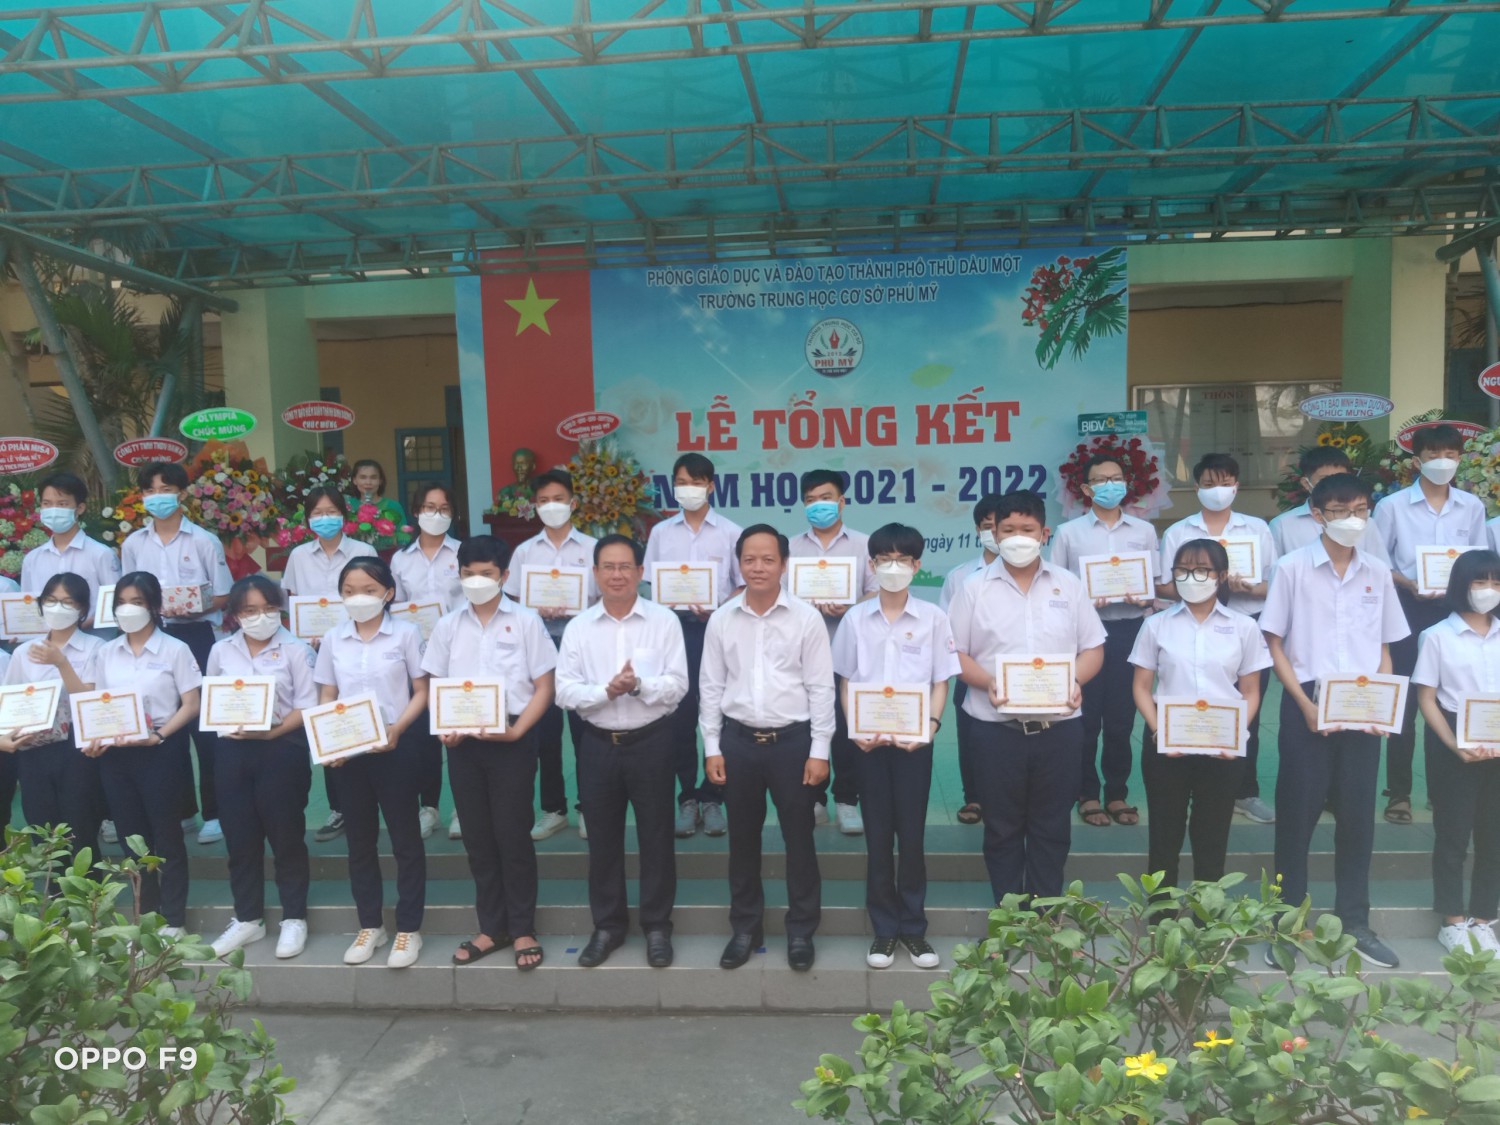 Ông Nguyễn Hữu Thạnh - Trưởng ban tổ chức thành ủy trao phần thưởng cho các em